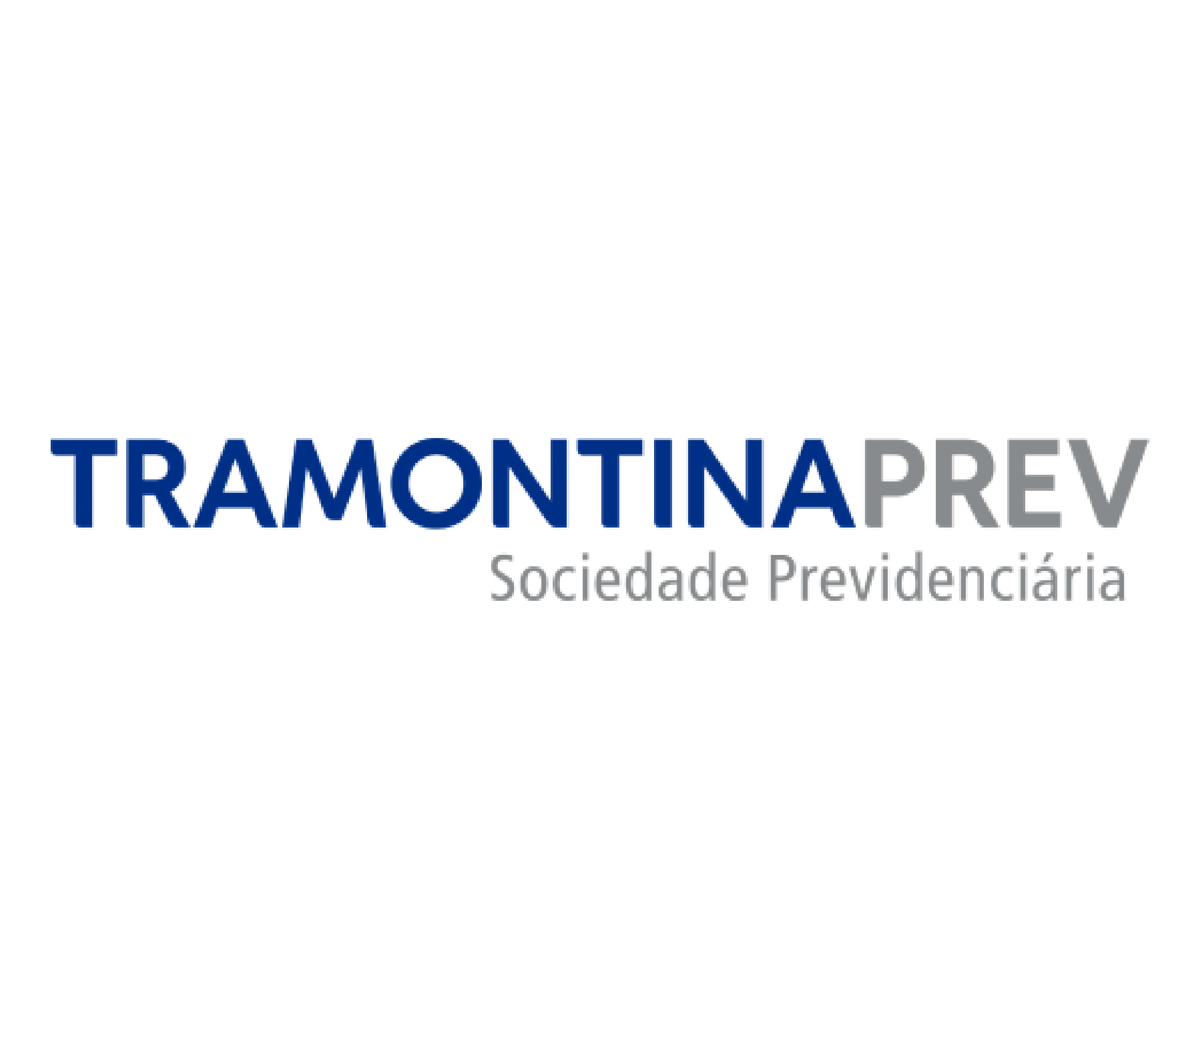 Tramontina PREV logotype: Pension Plan.